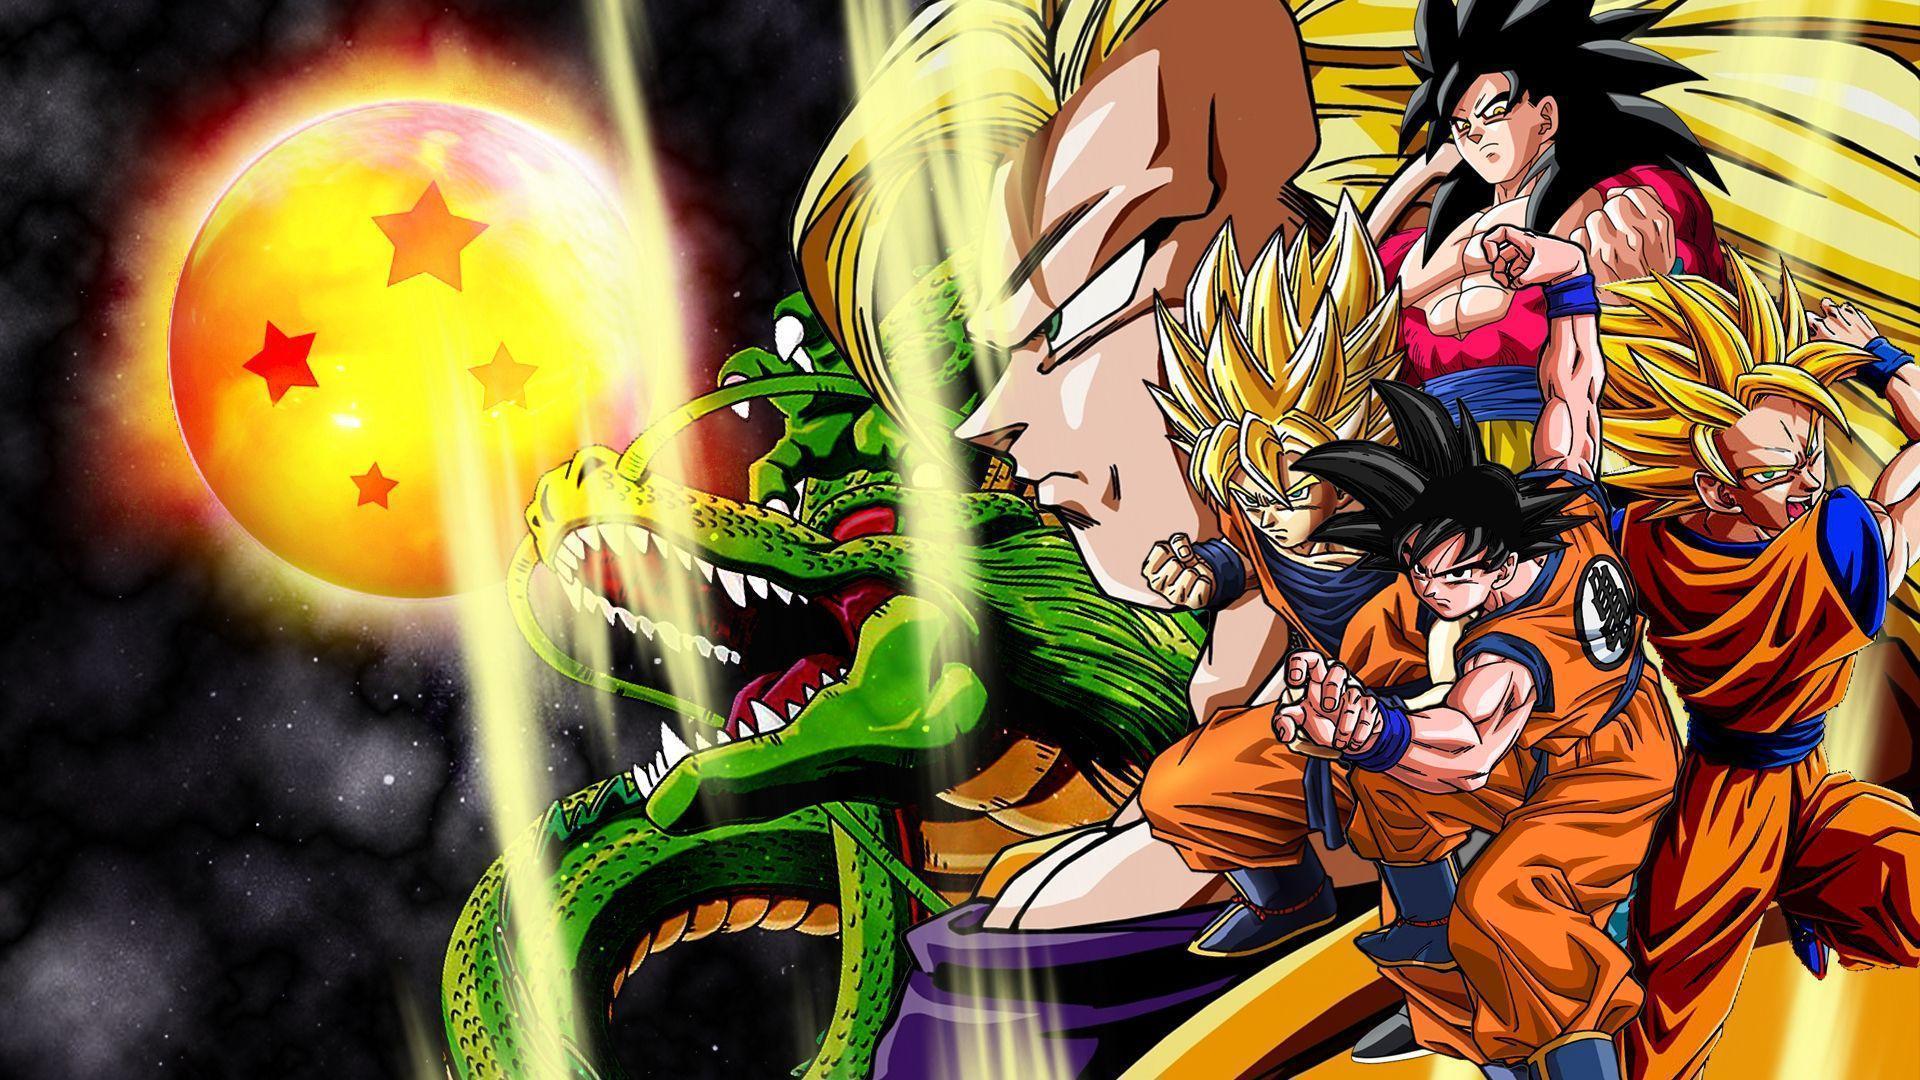 Cartoon Wallpaper: Goku Super Saiyan God Wallpapers Image with